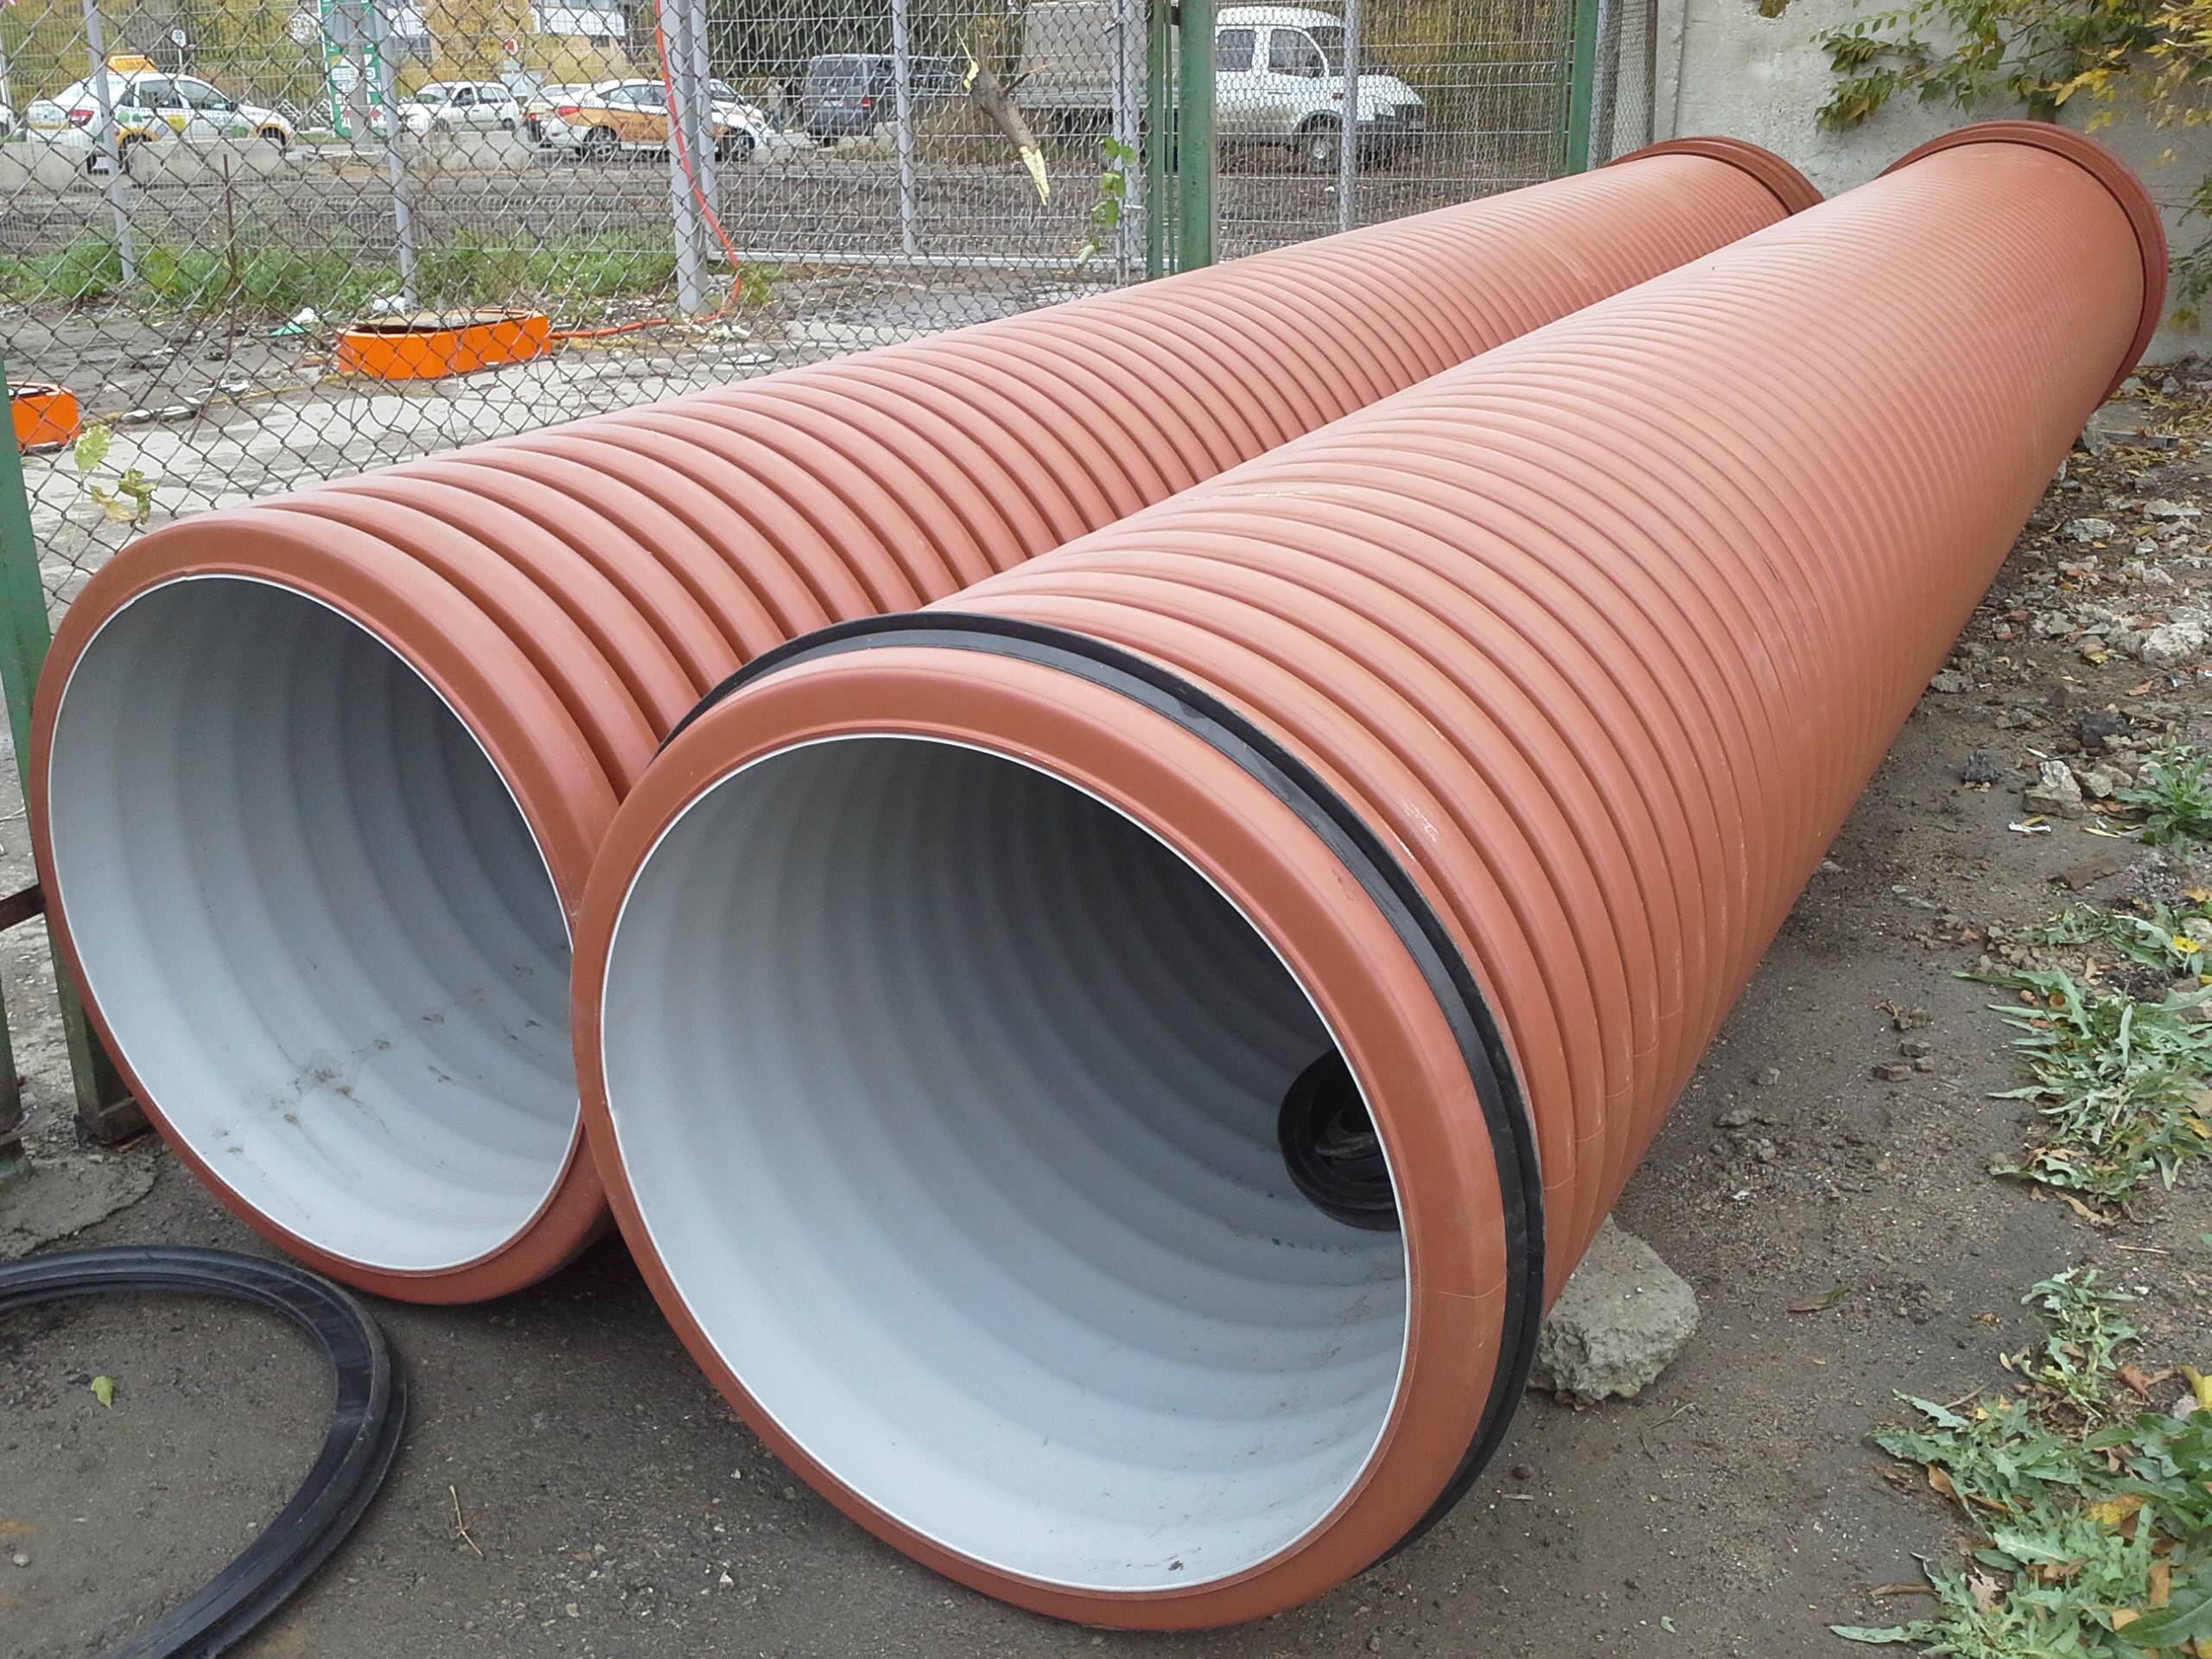 Гофрированные трубы для наружной канализации: цена, монтаж, выбор